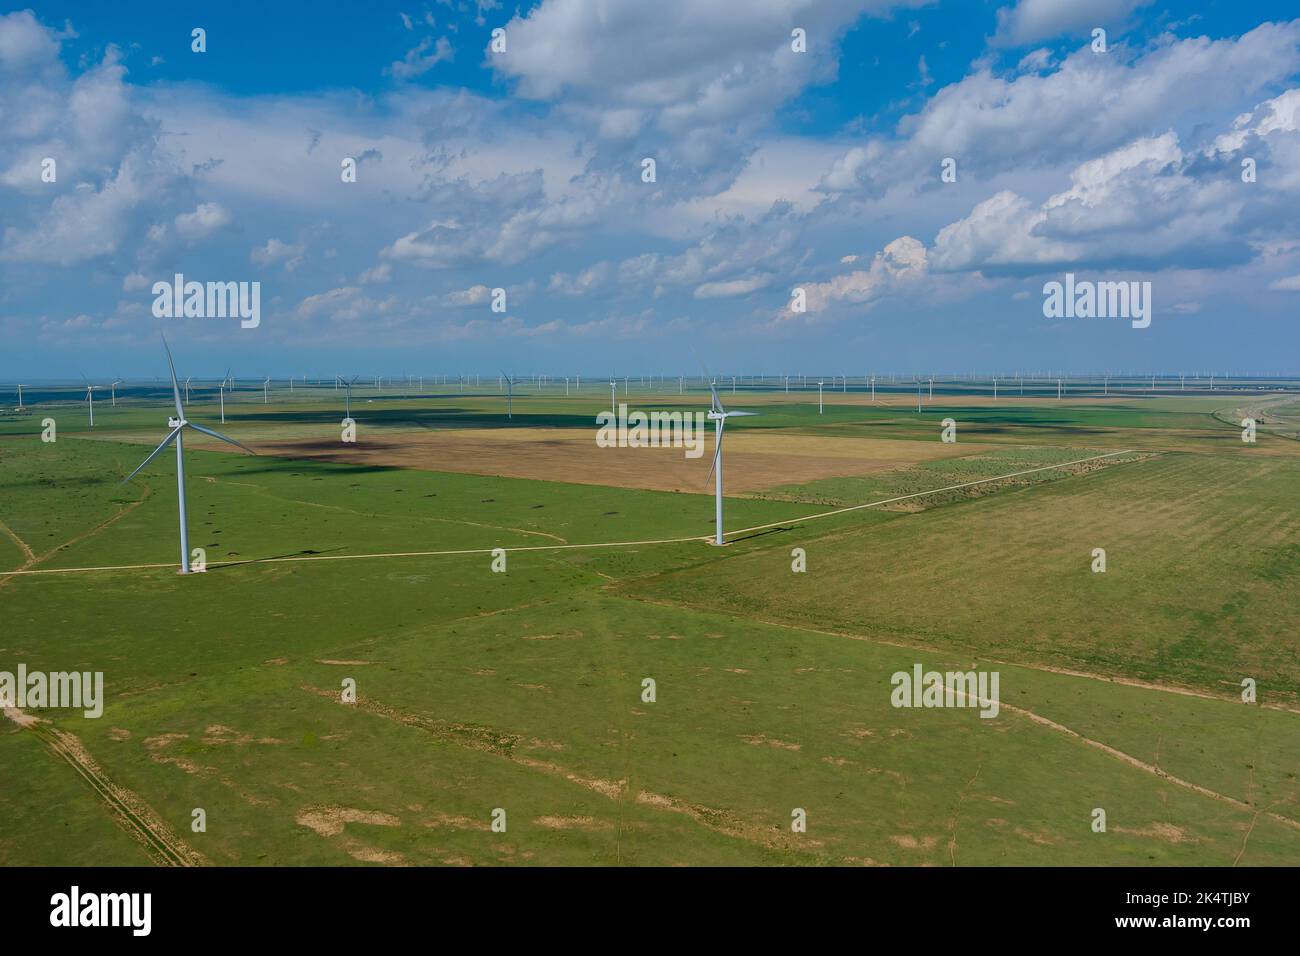 Auf einem Windpark in Texas, USA, wird eine Reihe von Windmühlen zur Erzeugung erneuerbarer Energie eingesetzt. Stockfoto